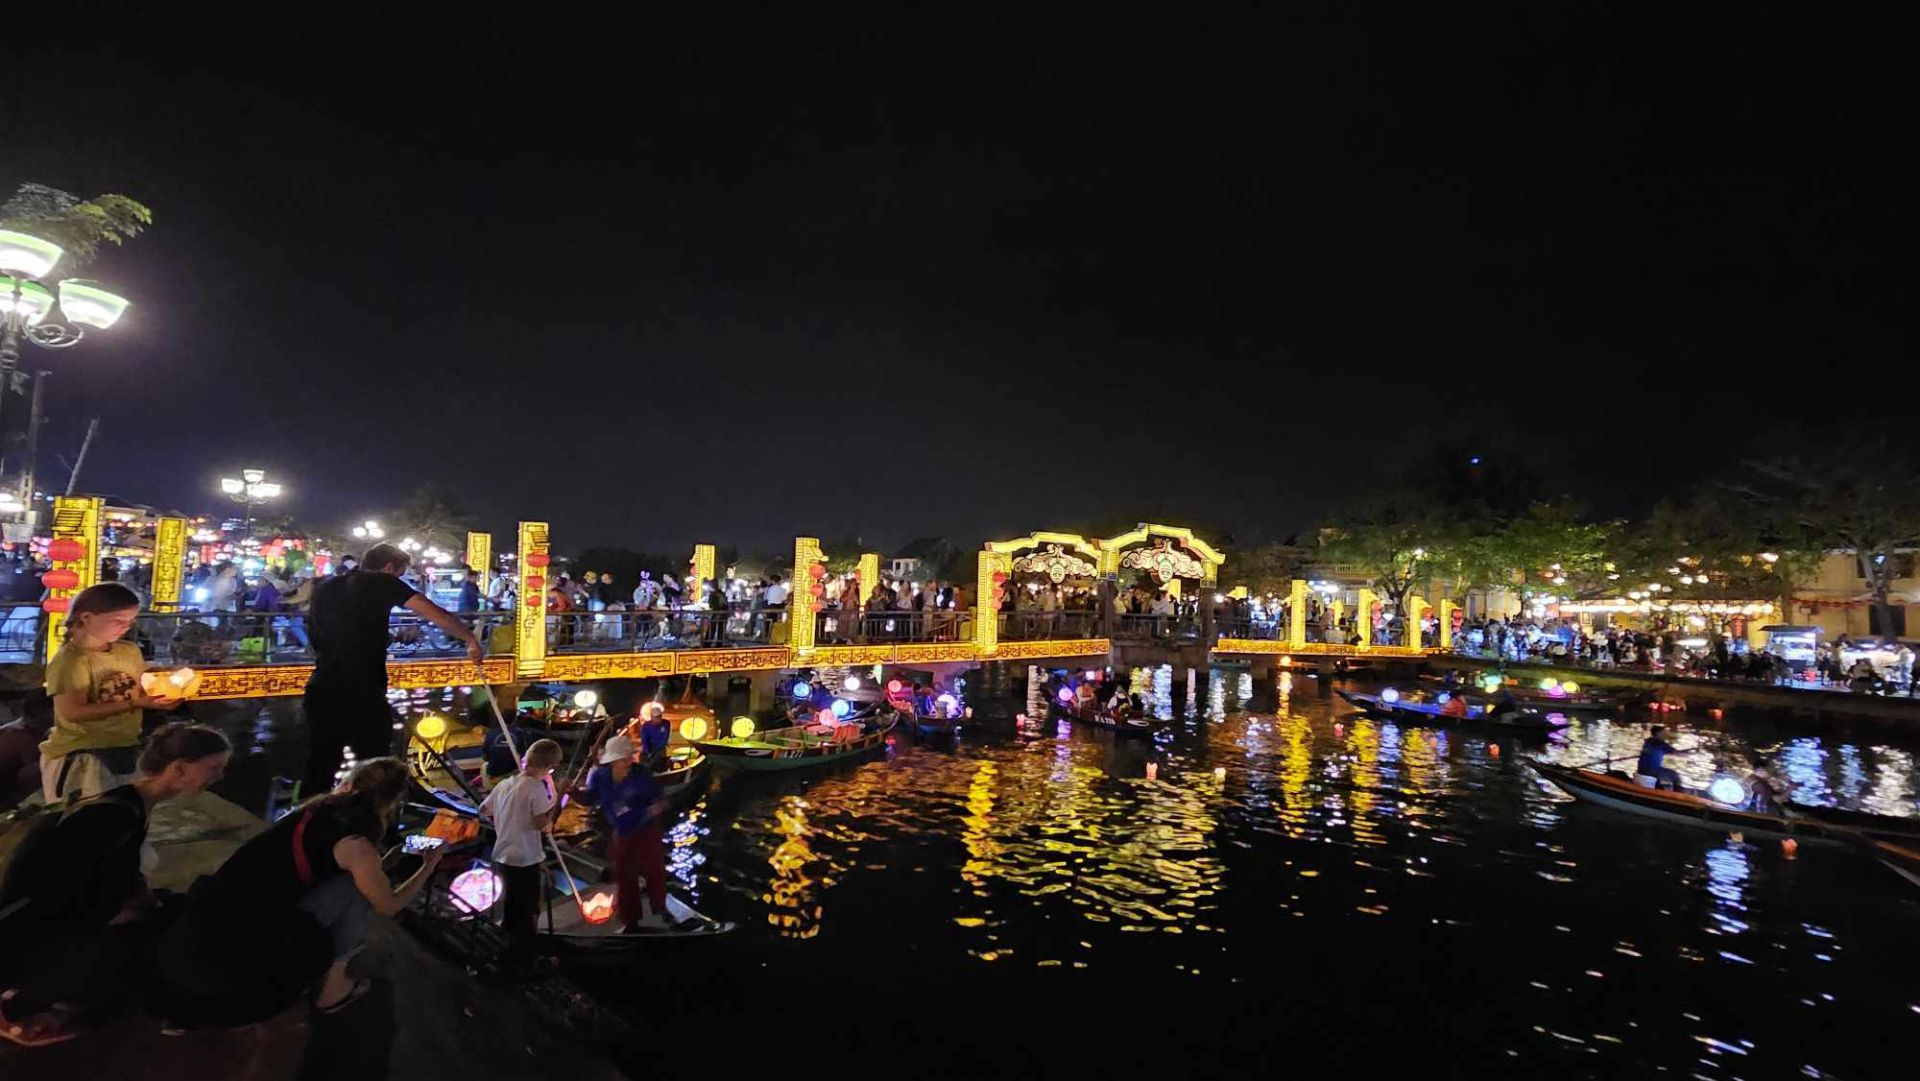 Du khách đi ghe trên sông Hoài dịp tết nguyên đán ngắm phố cổ Hội An vào ban đêm